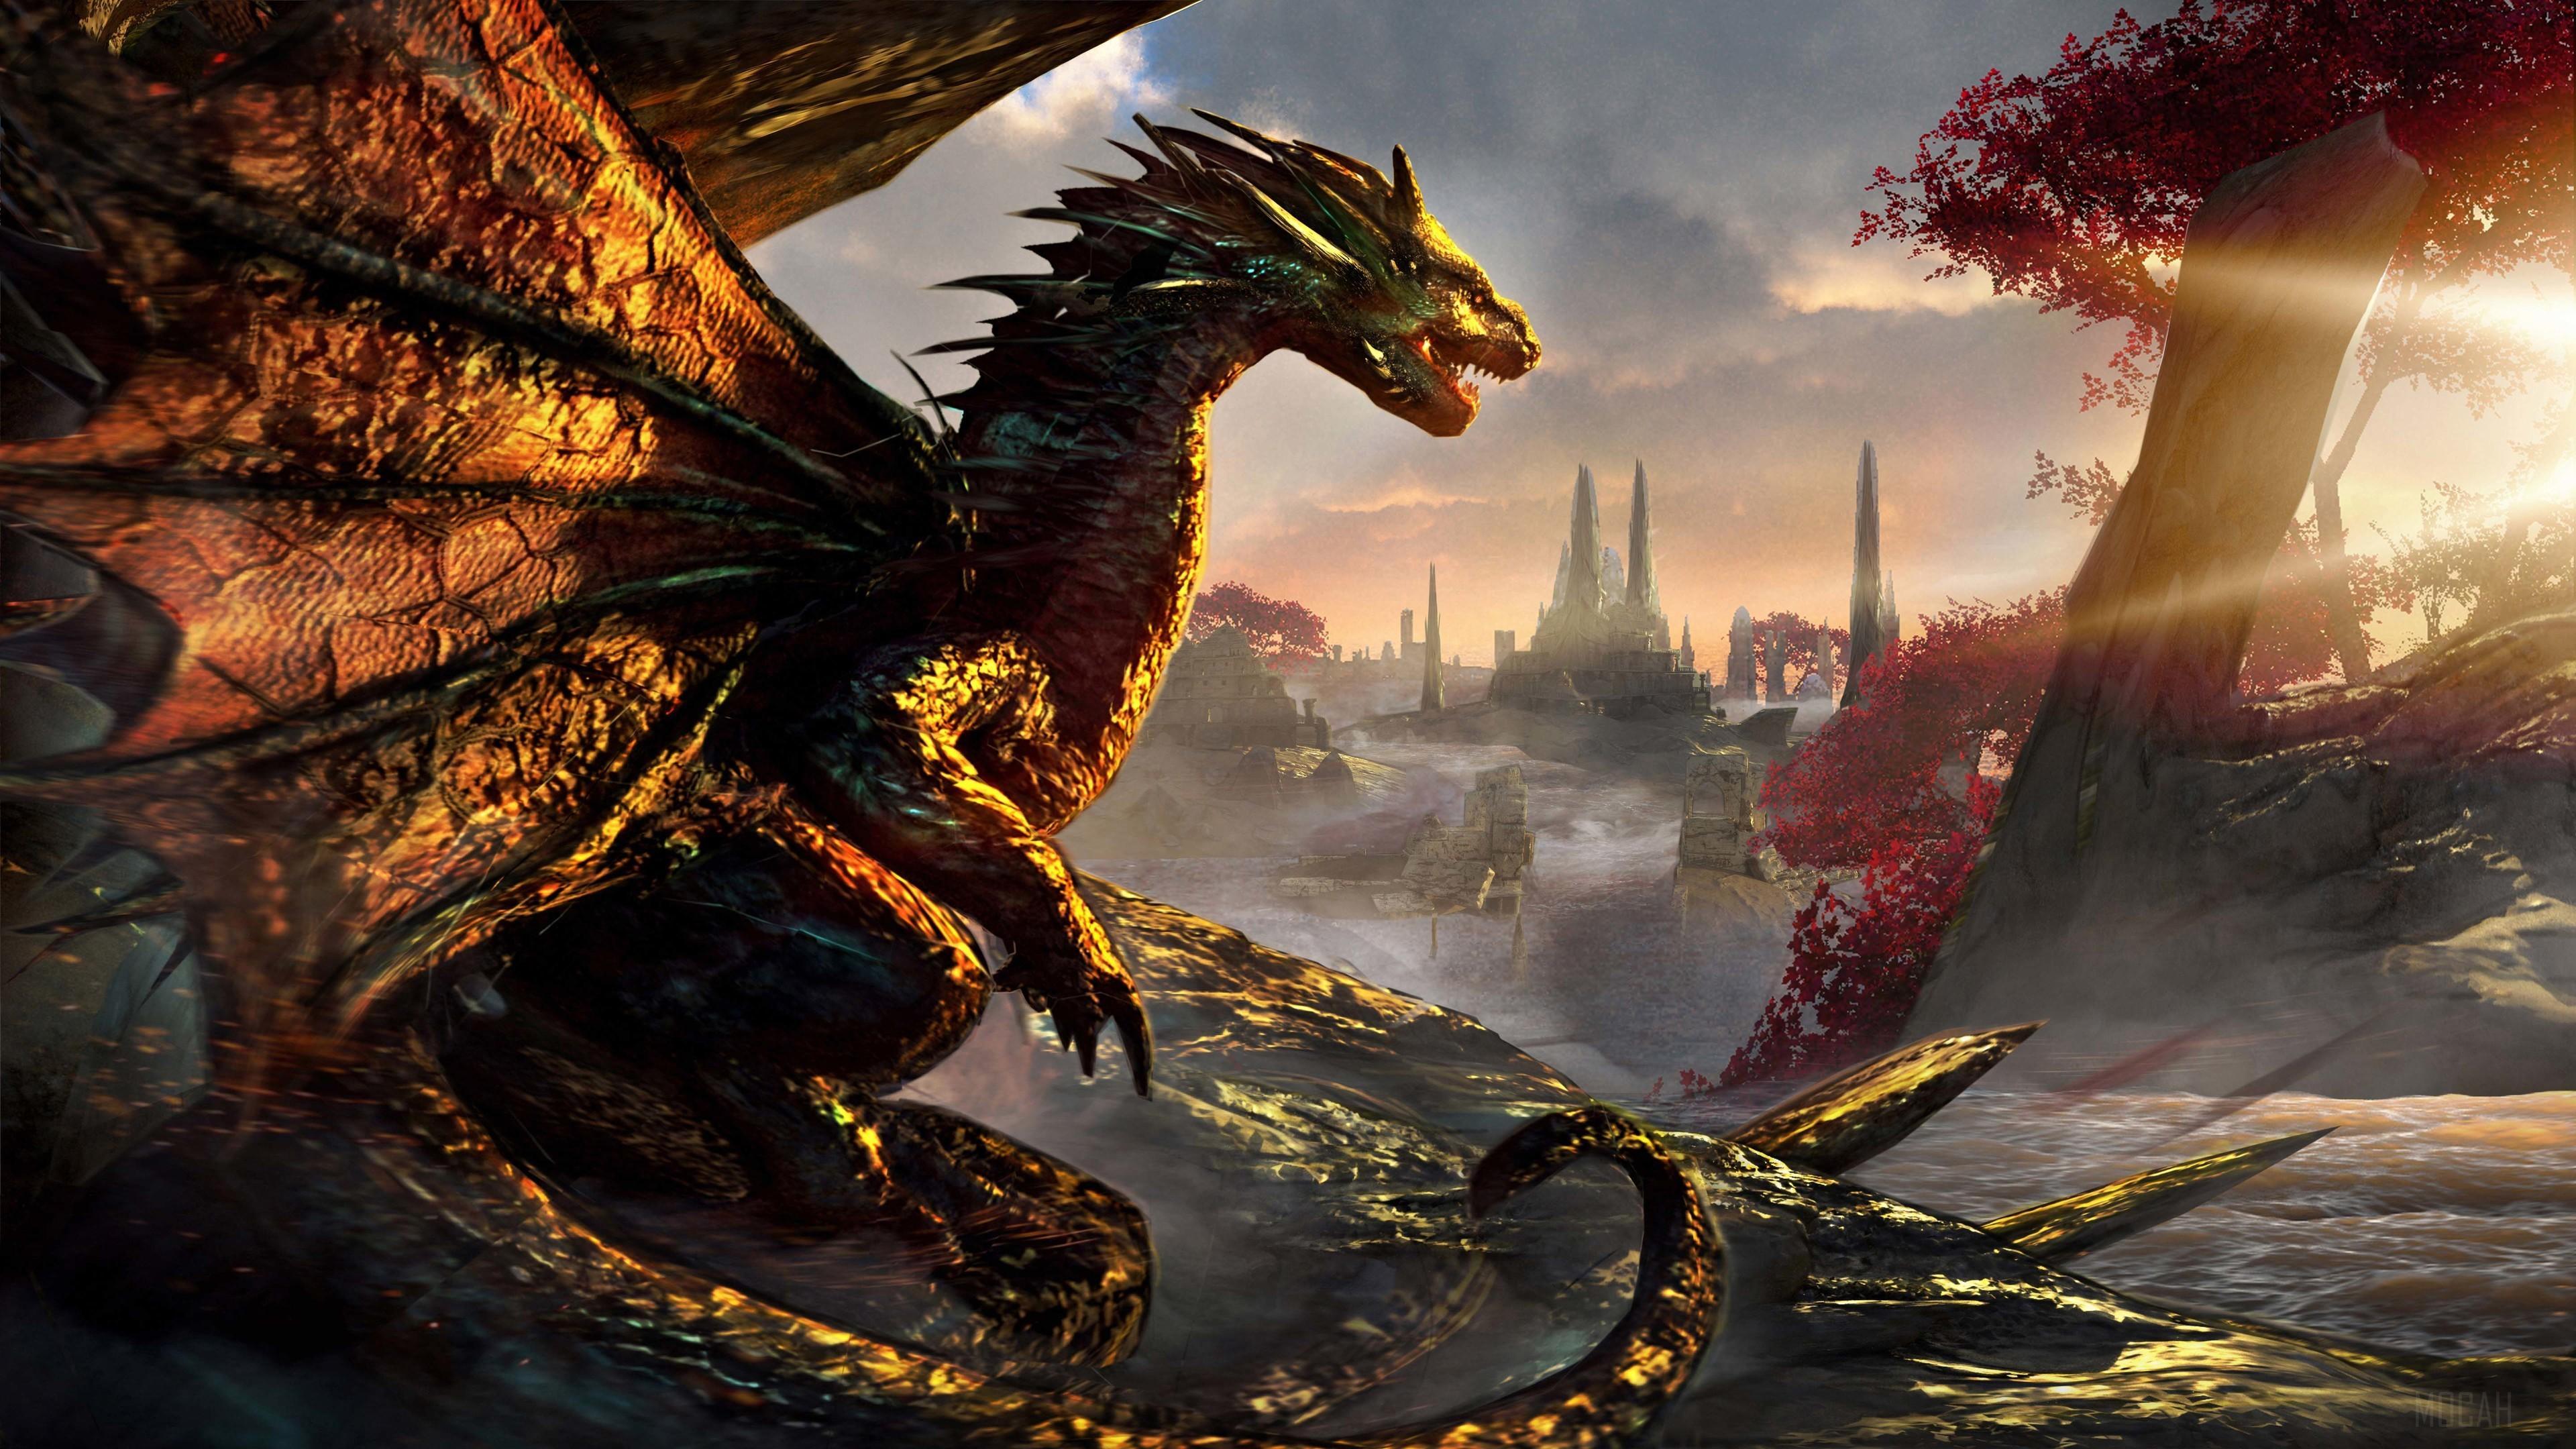 HD wallpaper, Dawn Of Dragons Artwork 4K